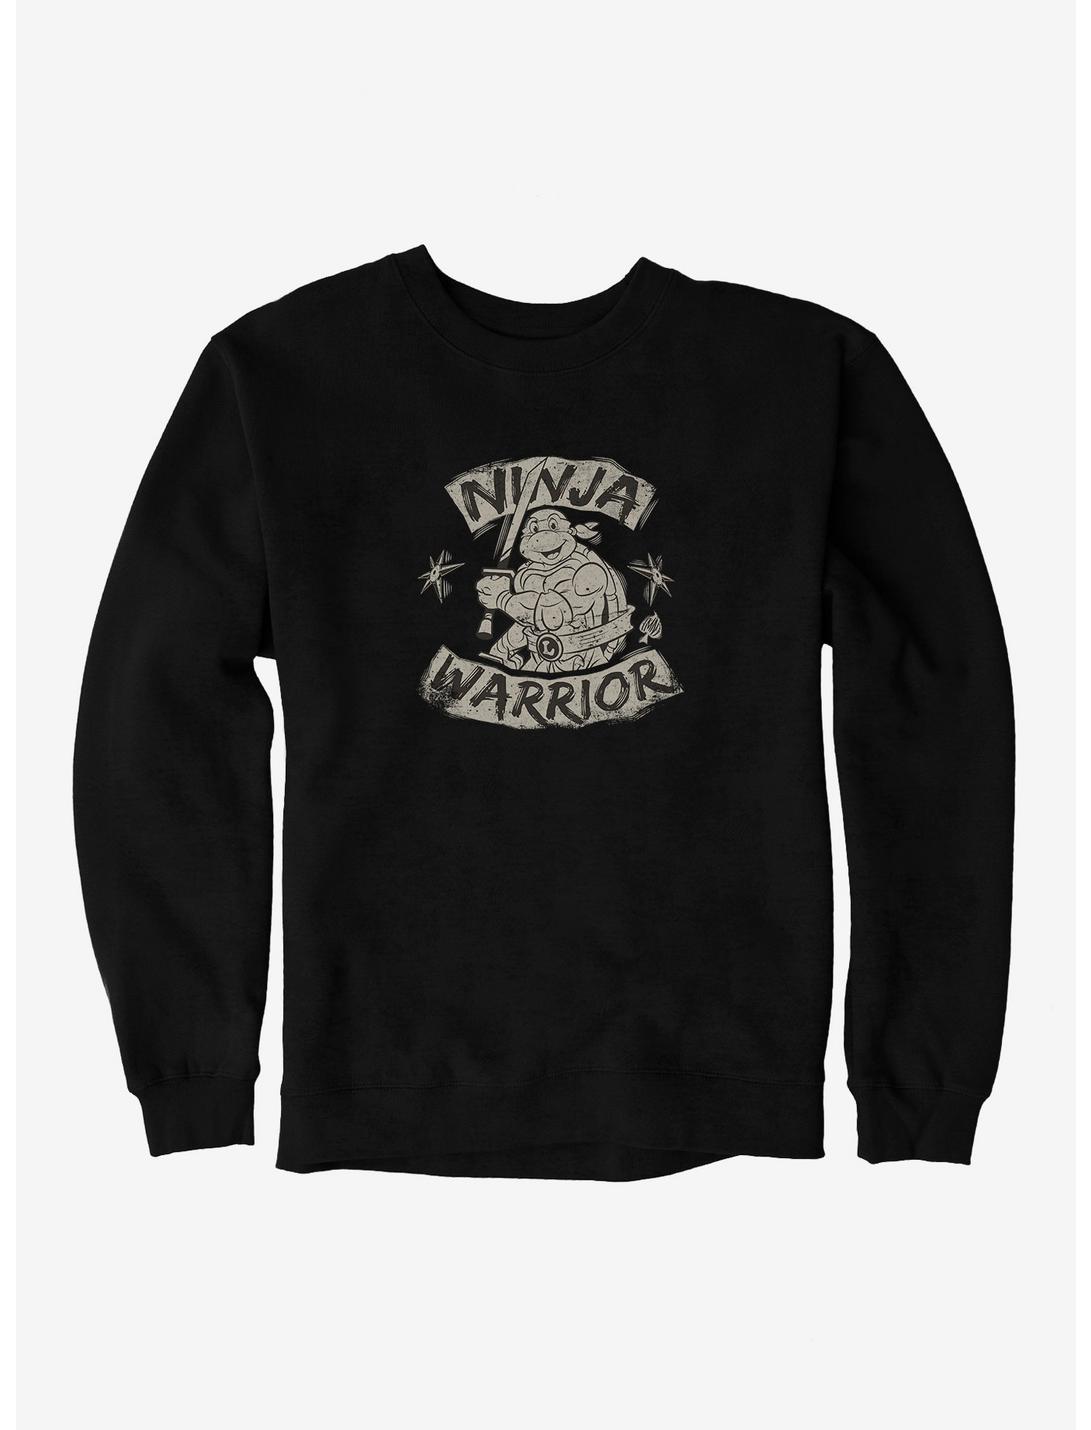 Teenage Mutant Ninja Turtles Leonardo Ninja Warrior Sweatshirt, BLACK, hi-res